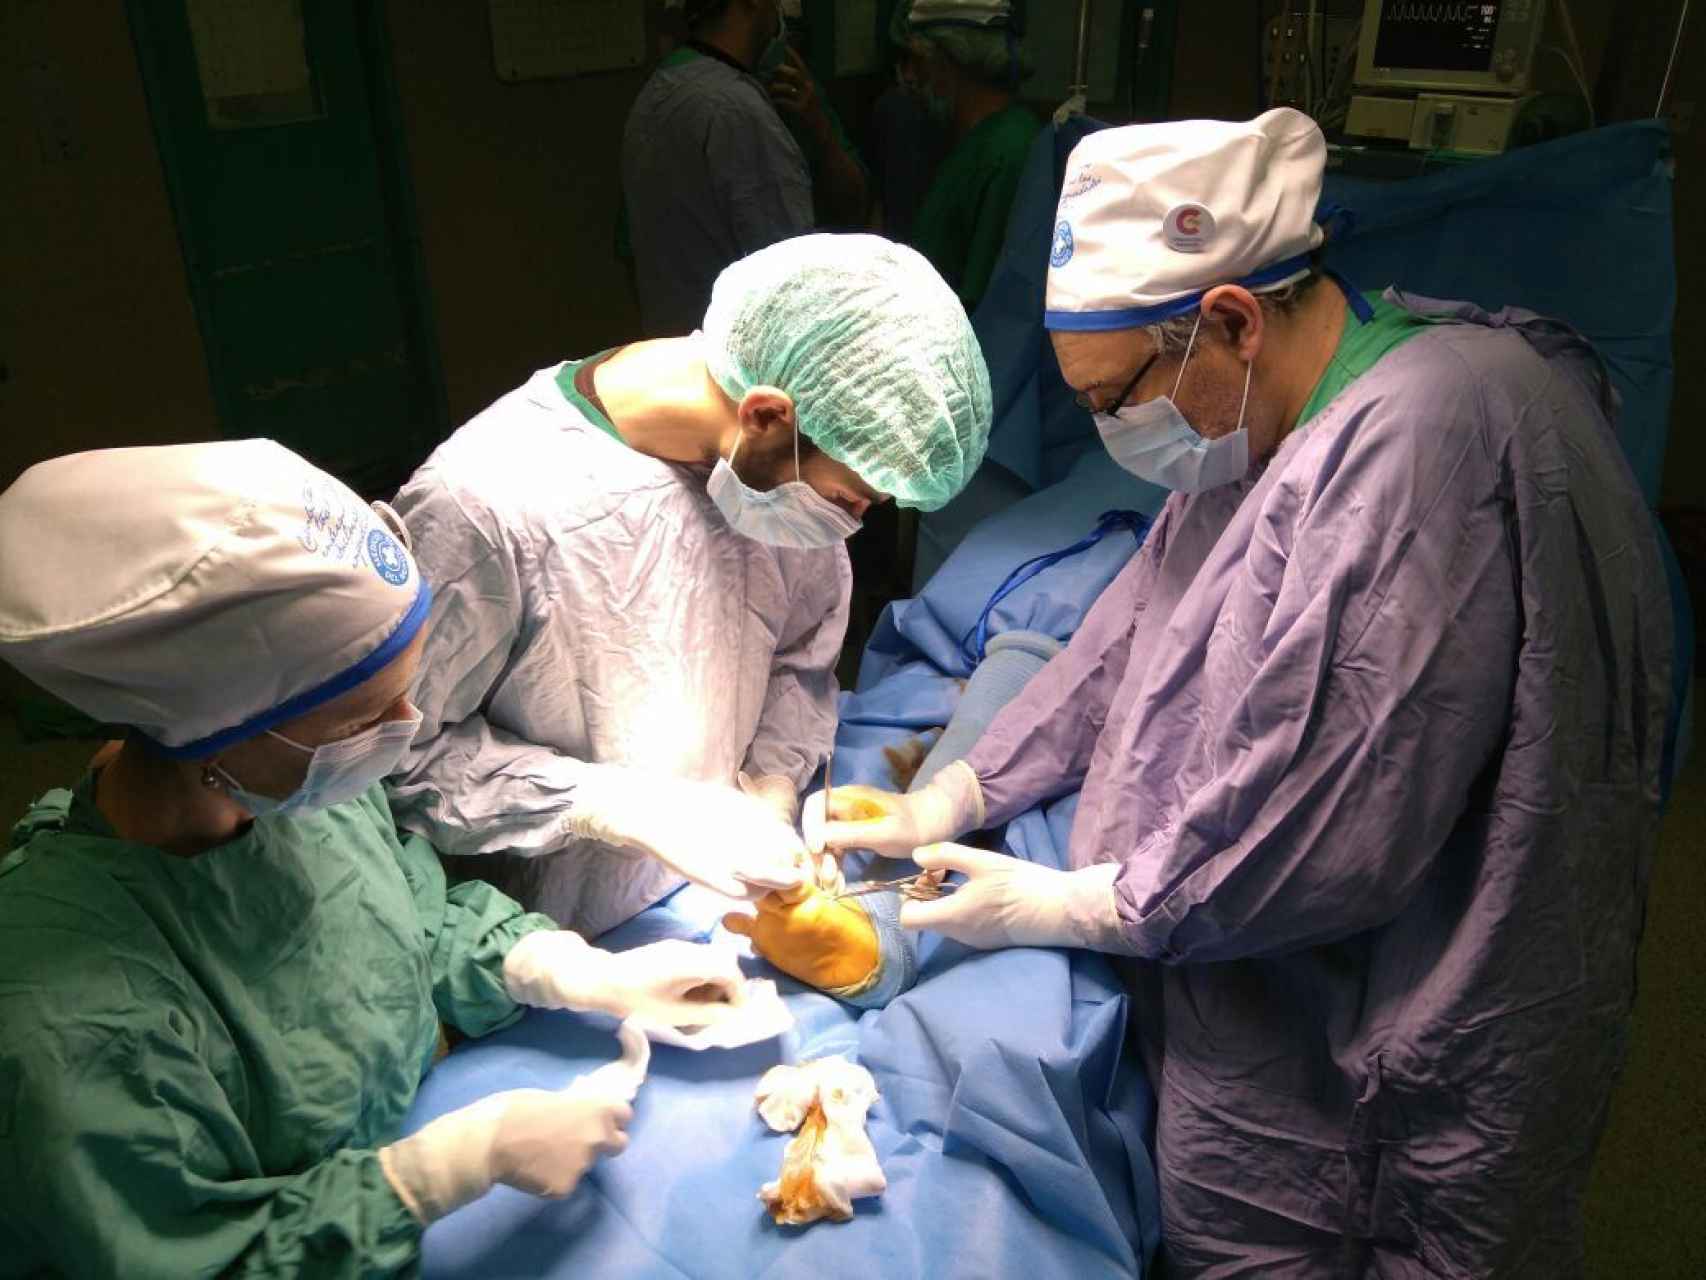 El dr. Felipe Noya (d), dr. Abdelfatah Jader (c) y la enfermera Aloña Zubizarreta (i) en quirófano.